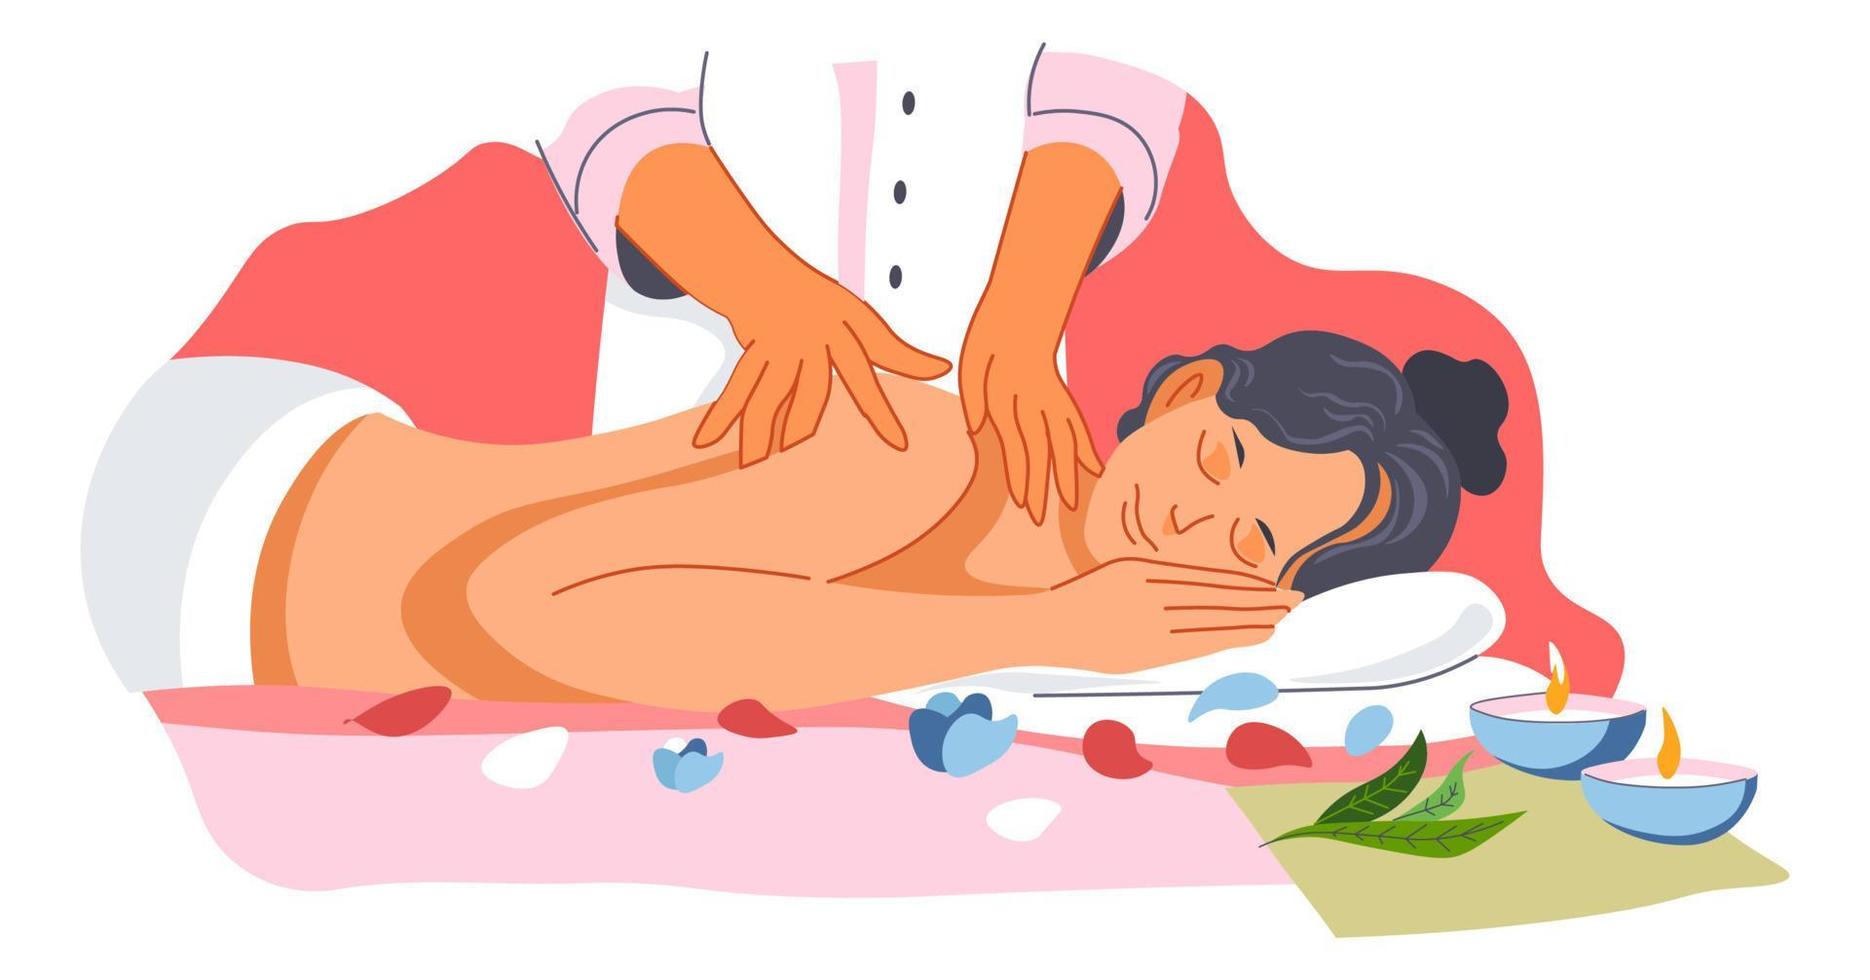 Back massage in spa salon, skincare treatment vector